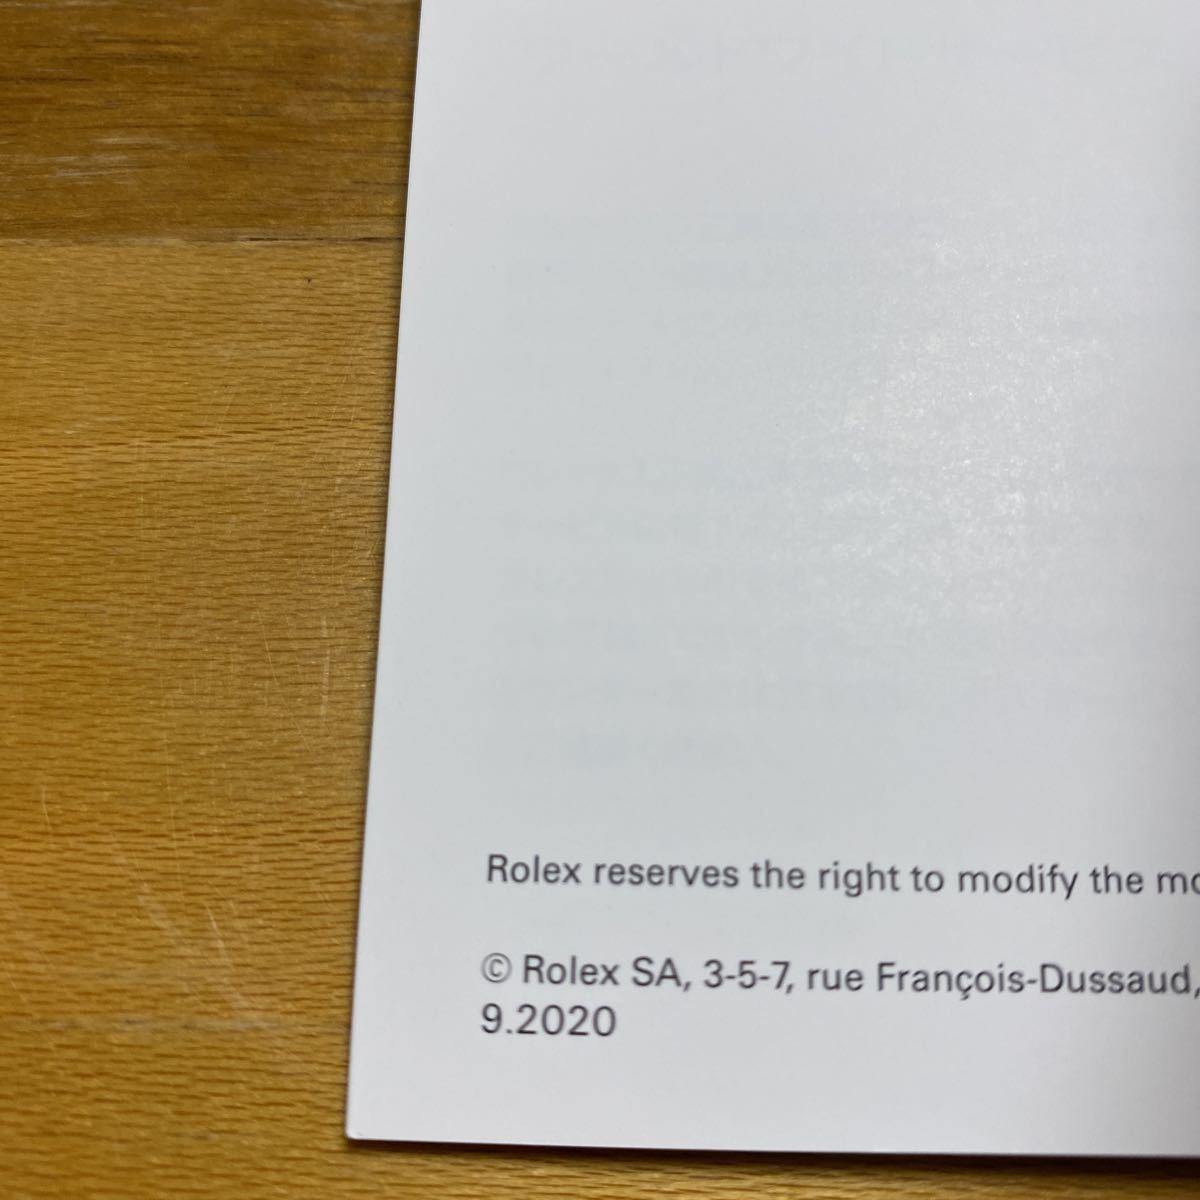 3454【希少必見】ロレックス サブマリーナ 冊子 取扱説明書 2020年度版 ROLEX SUBMARINER 冊子_画像2